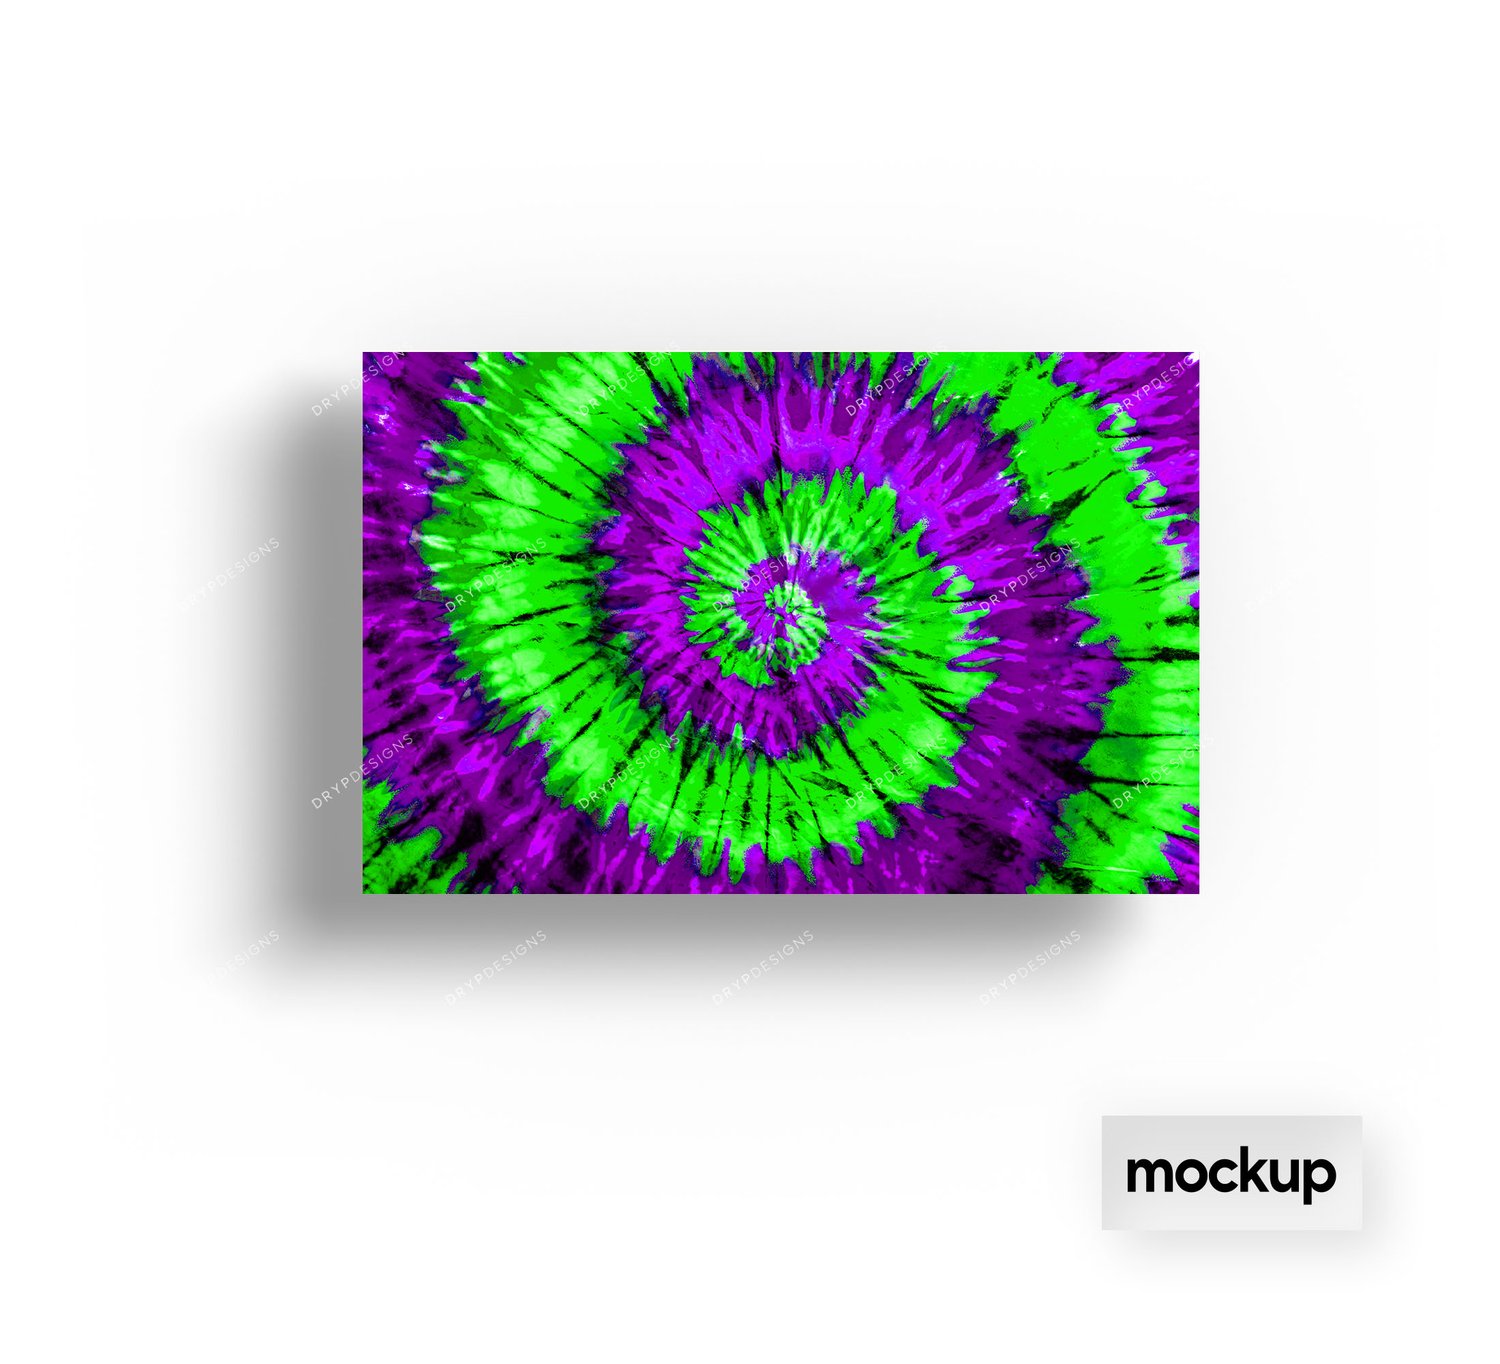 Bạn đam mê sự mới lạ và độc đáo? Hãy xem ngay hình nền Neon Green + Purple với kỹ thuật Tie-Dye trên nền xanh lục này! Được thiết kế bởi drypdesigns, chiếc nền này đem lại cho bạn một cái nhìn đầy sáng tạo và năng động, phần nào thể hiện được cá tính của chính bạn.